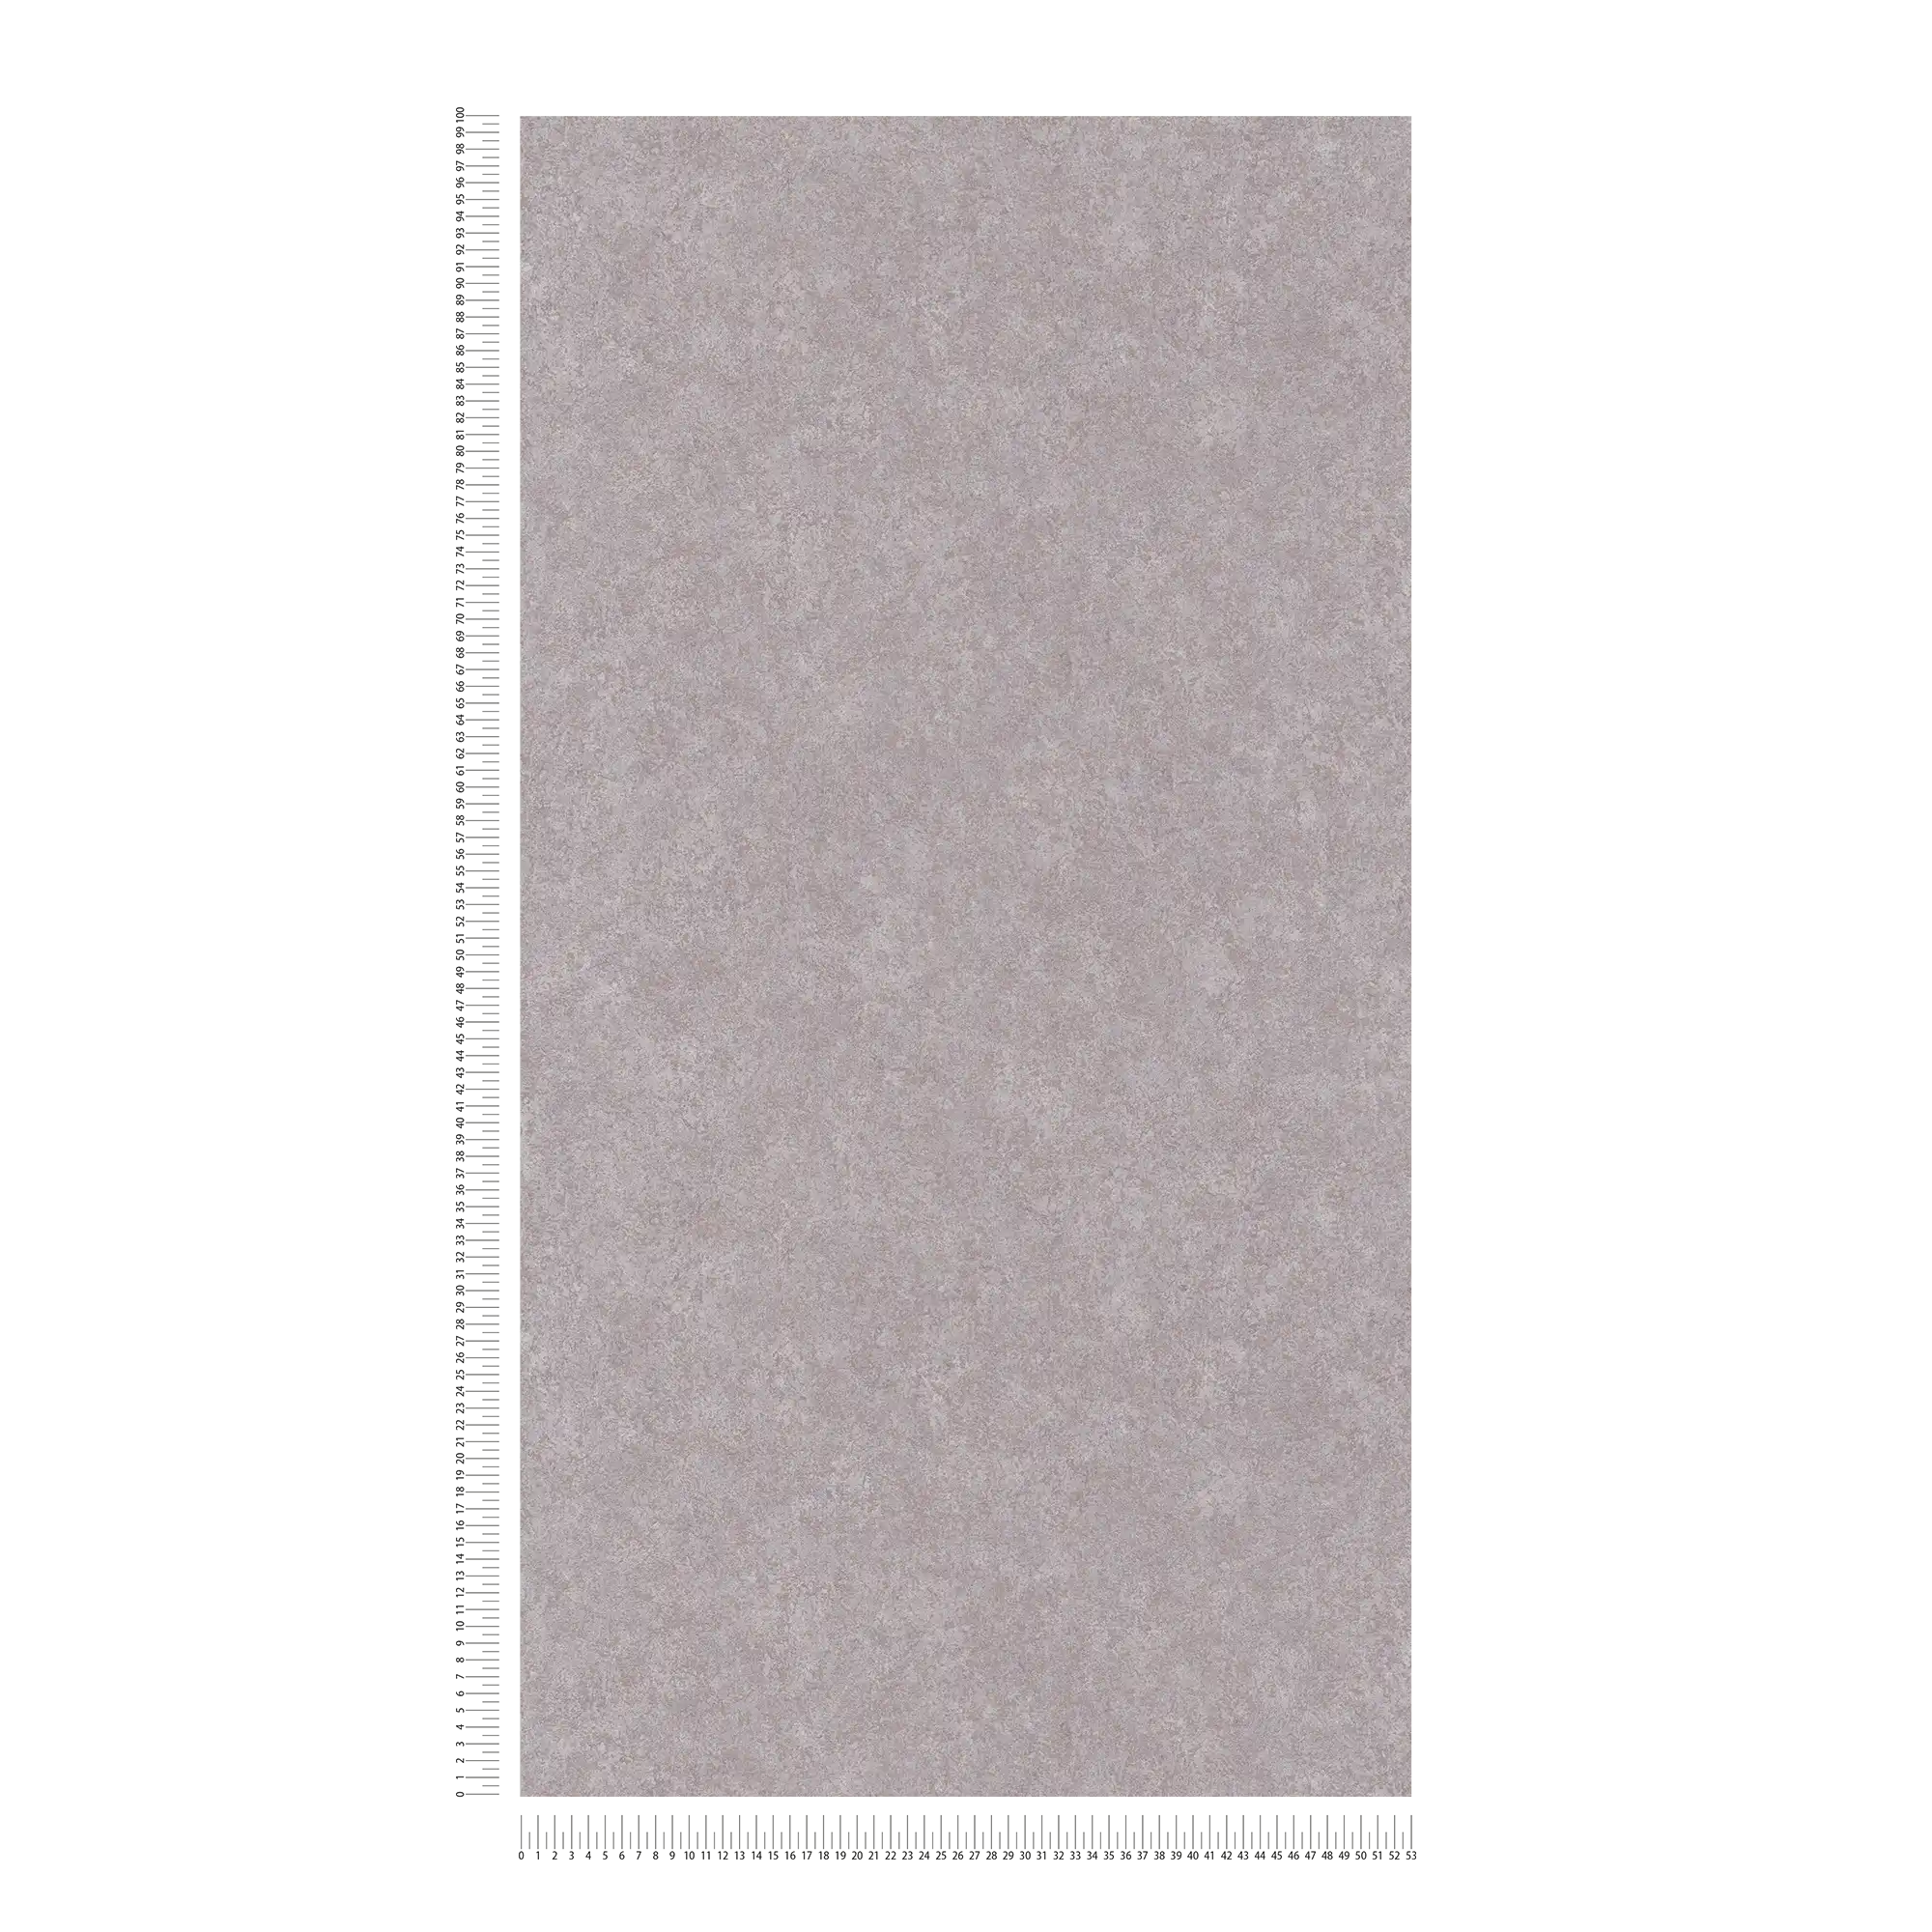             Papier peint neutre aspect plâtre avec surface mate - gris
        